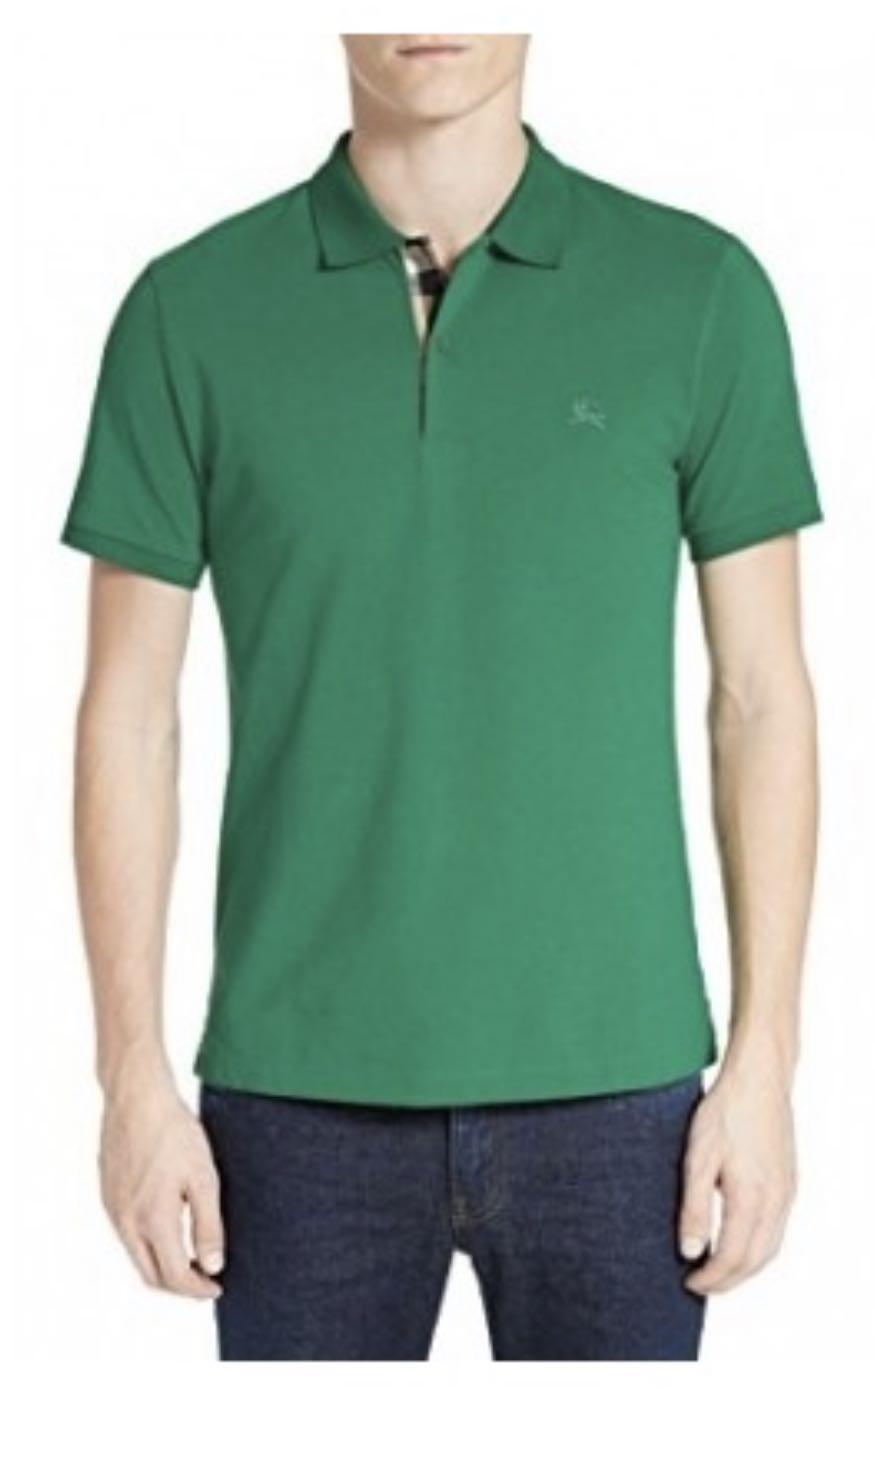 burberry shirt green